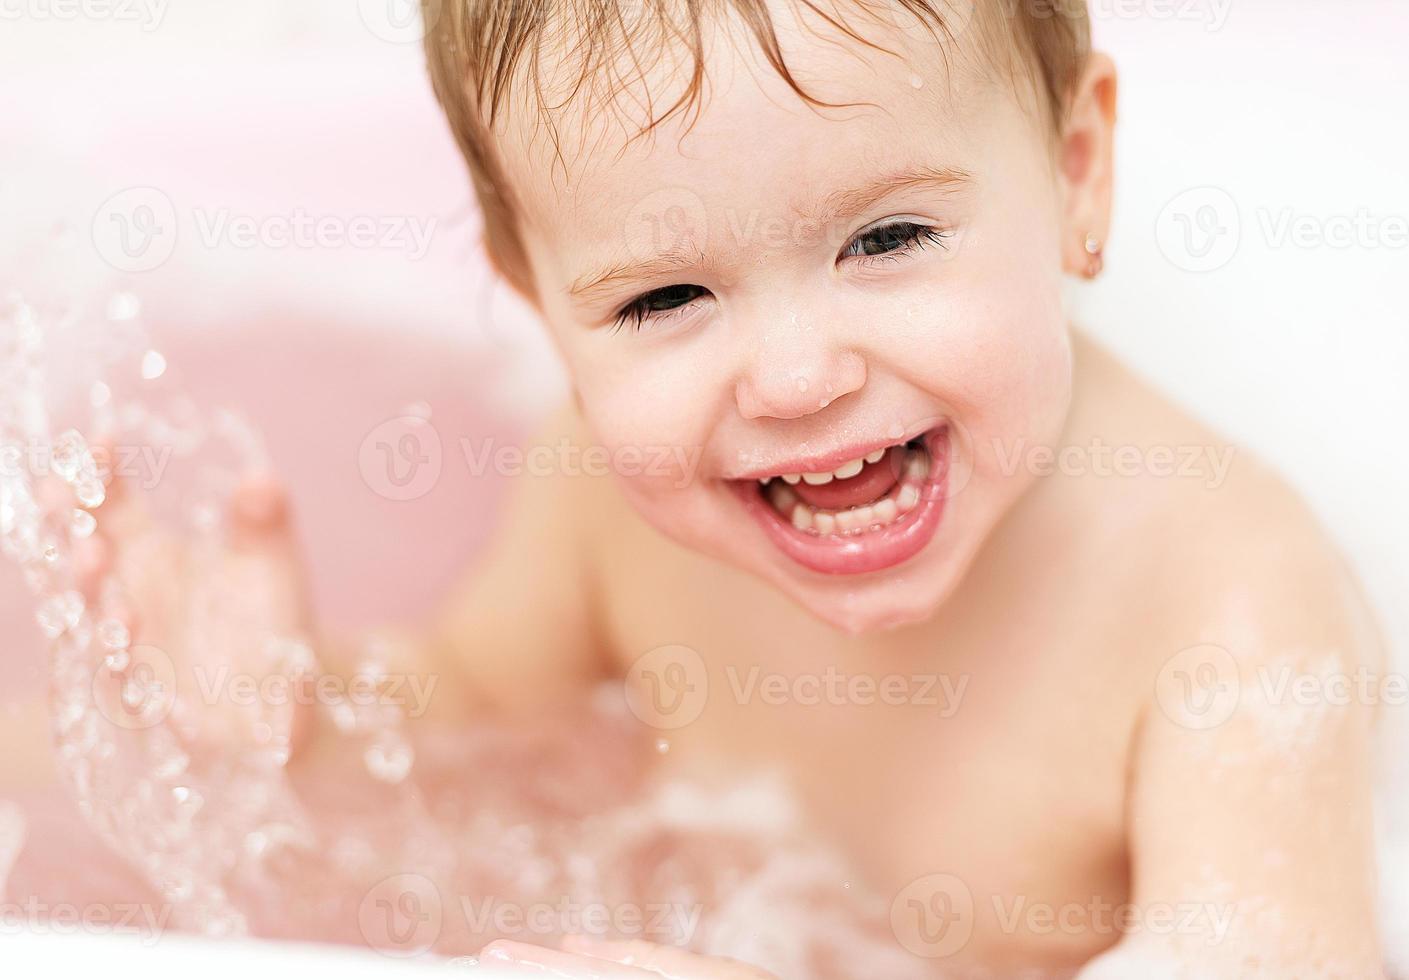 bambina felice ridendo e bagnata nel bagno foto